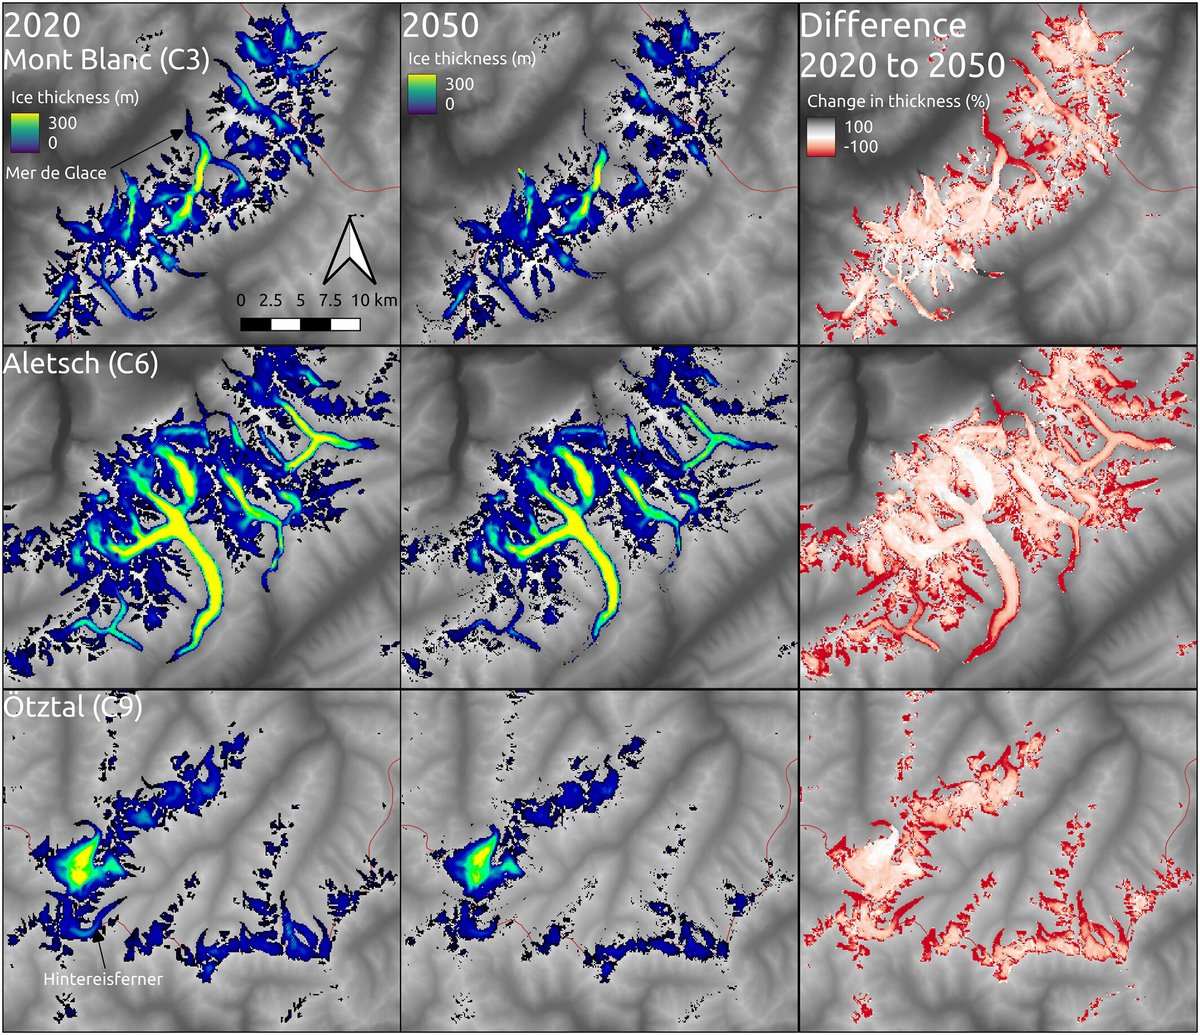 Épaisseur de la glace en 2020 (première colonne) et 2050 (deuxième colonne), et différence entre elles (troisième colonne) pour le massif du Mont Blanc, sur la ligne du haut © Geophysical Research Letters